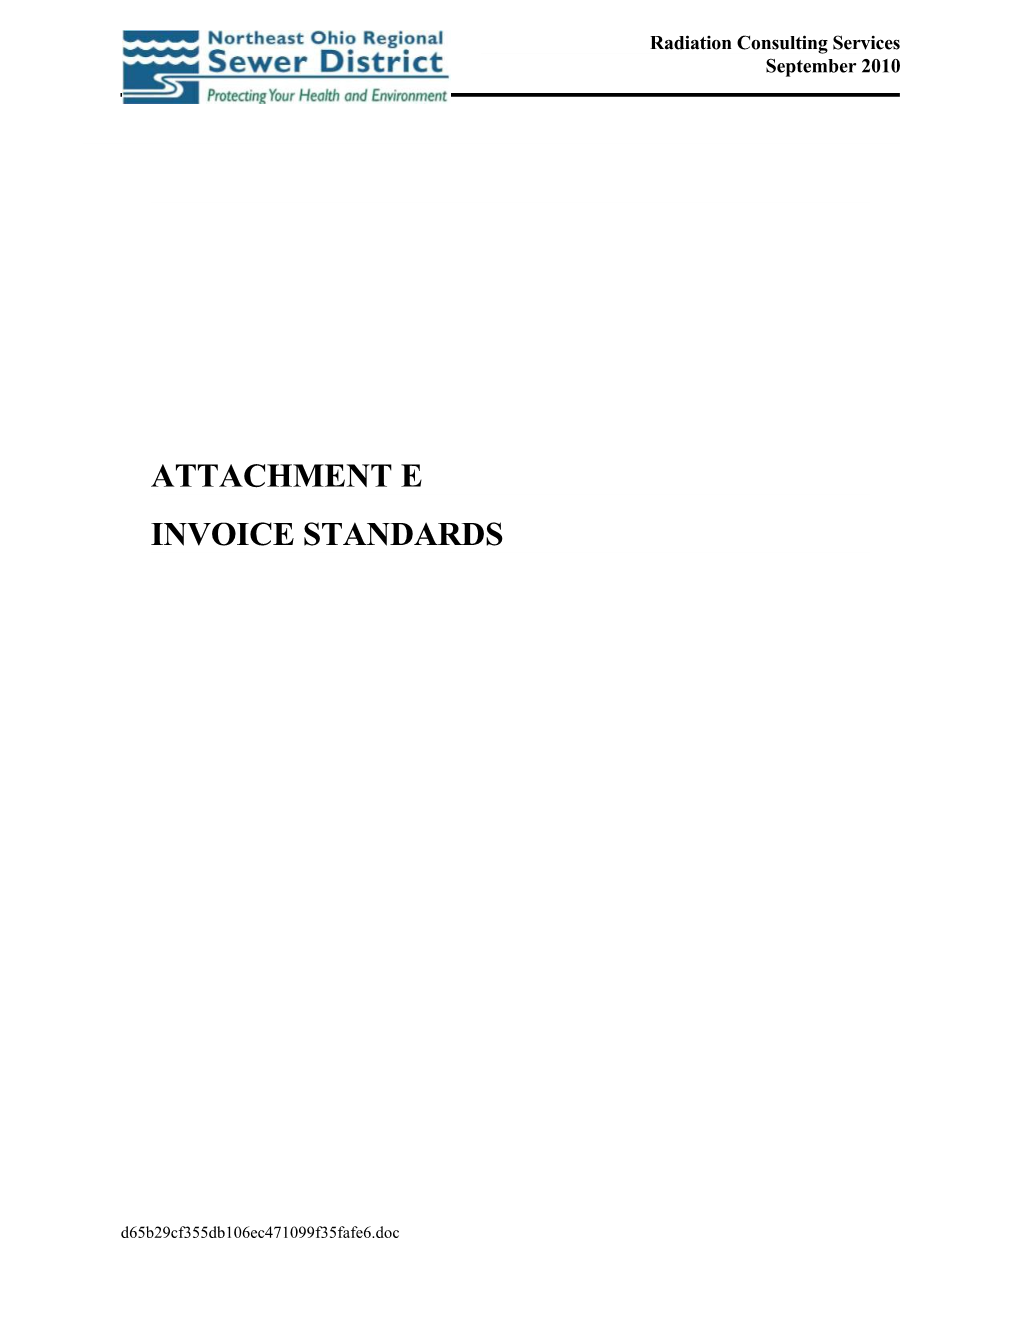 Attachment a - Invoice Standards